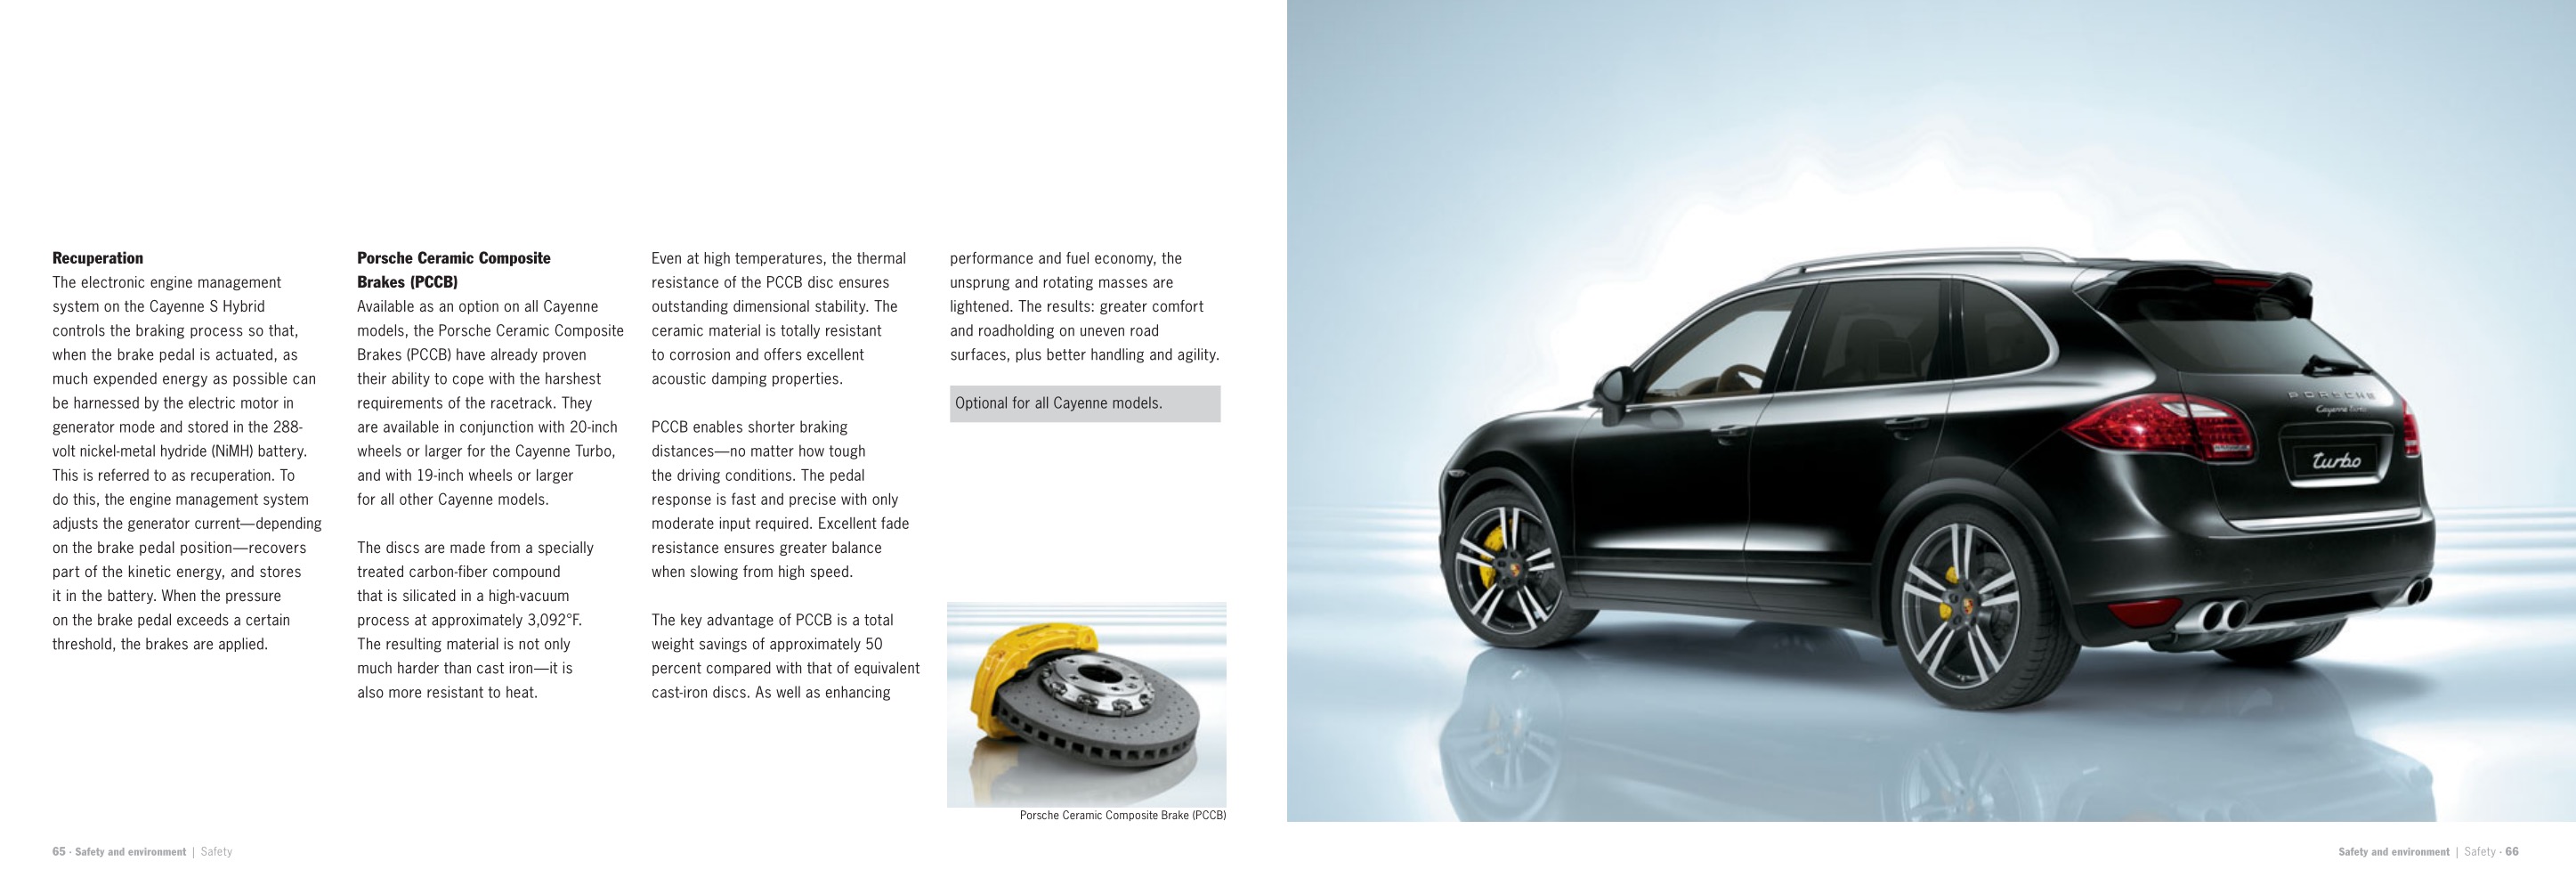 2013 Porsche Cayenne Brochure Page 36